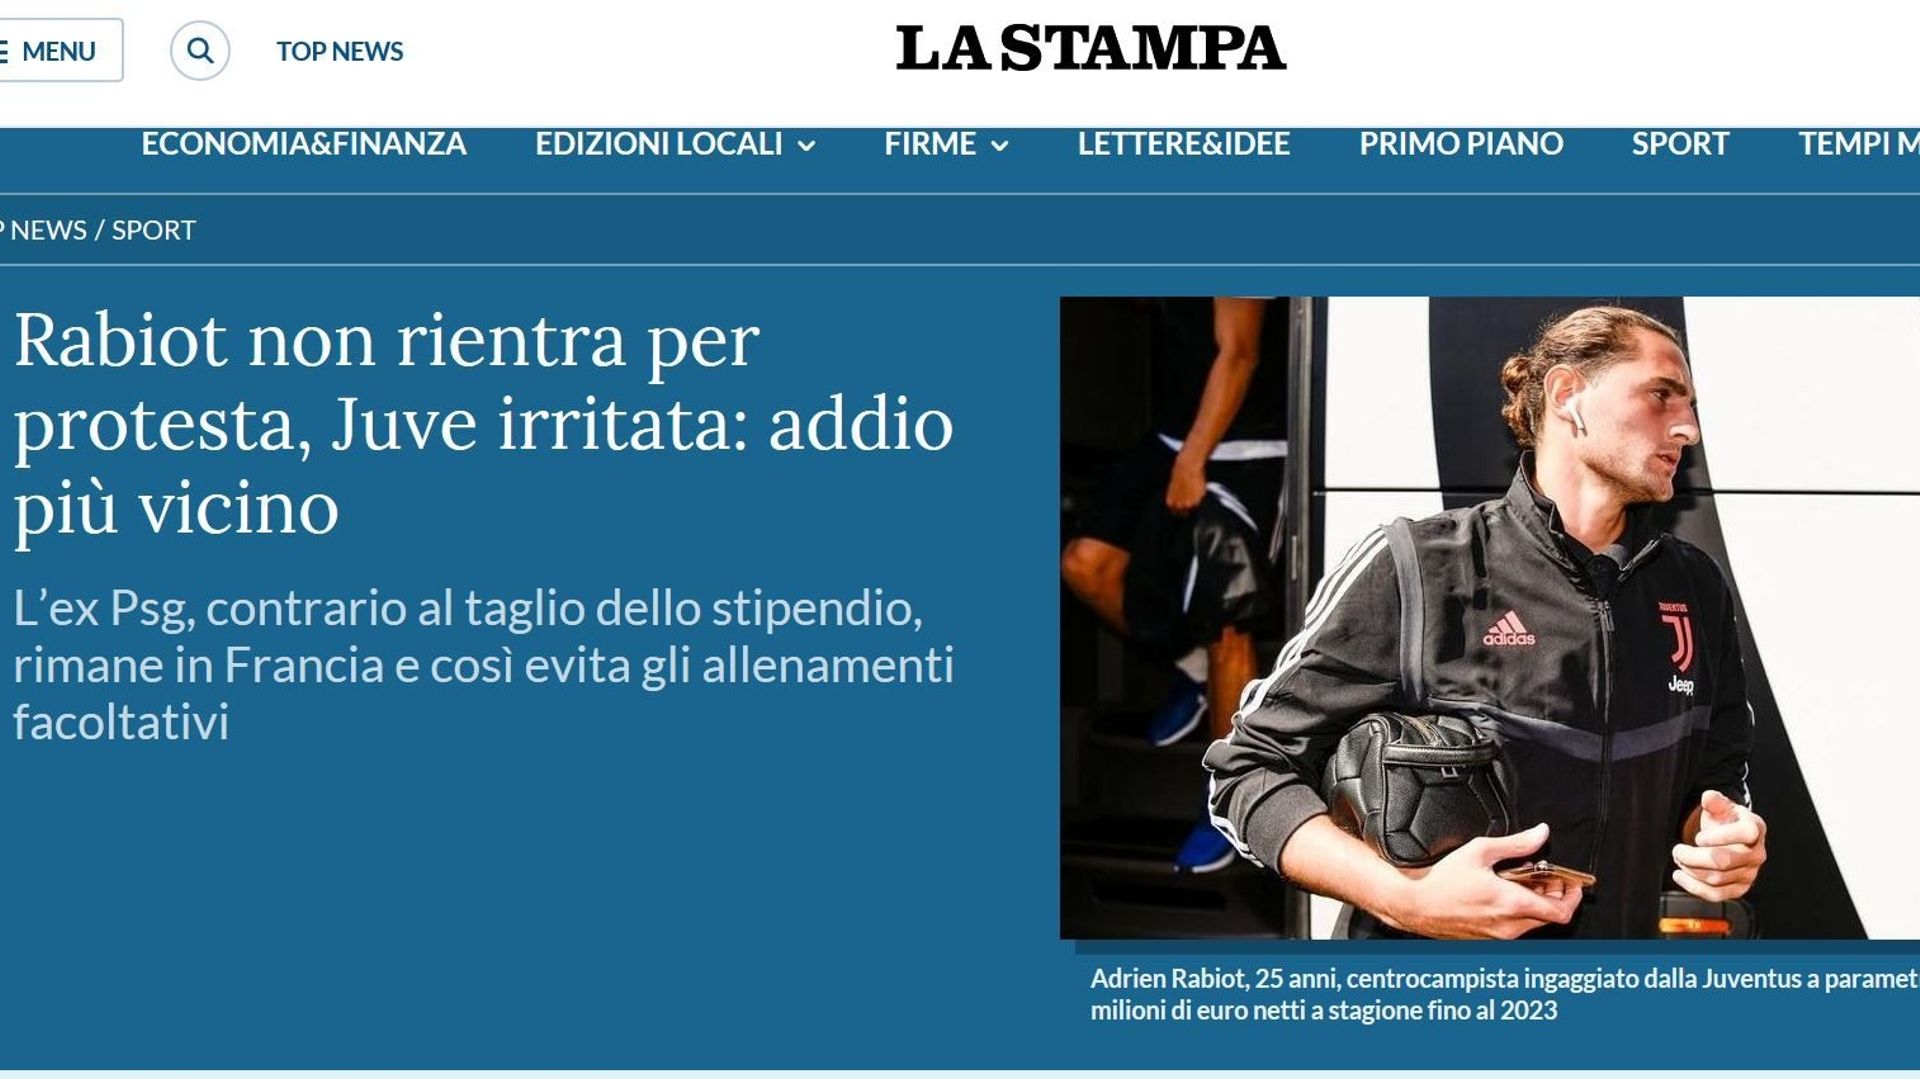 Selon la Stampa, Adrien Rabiot, mécontent de la baisse des salaires à la Juventus, serait en "grève personnelle". 